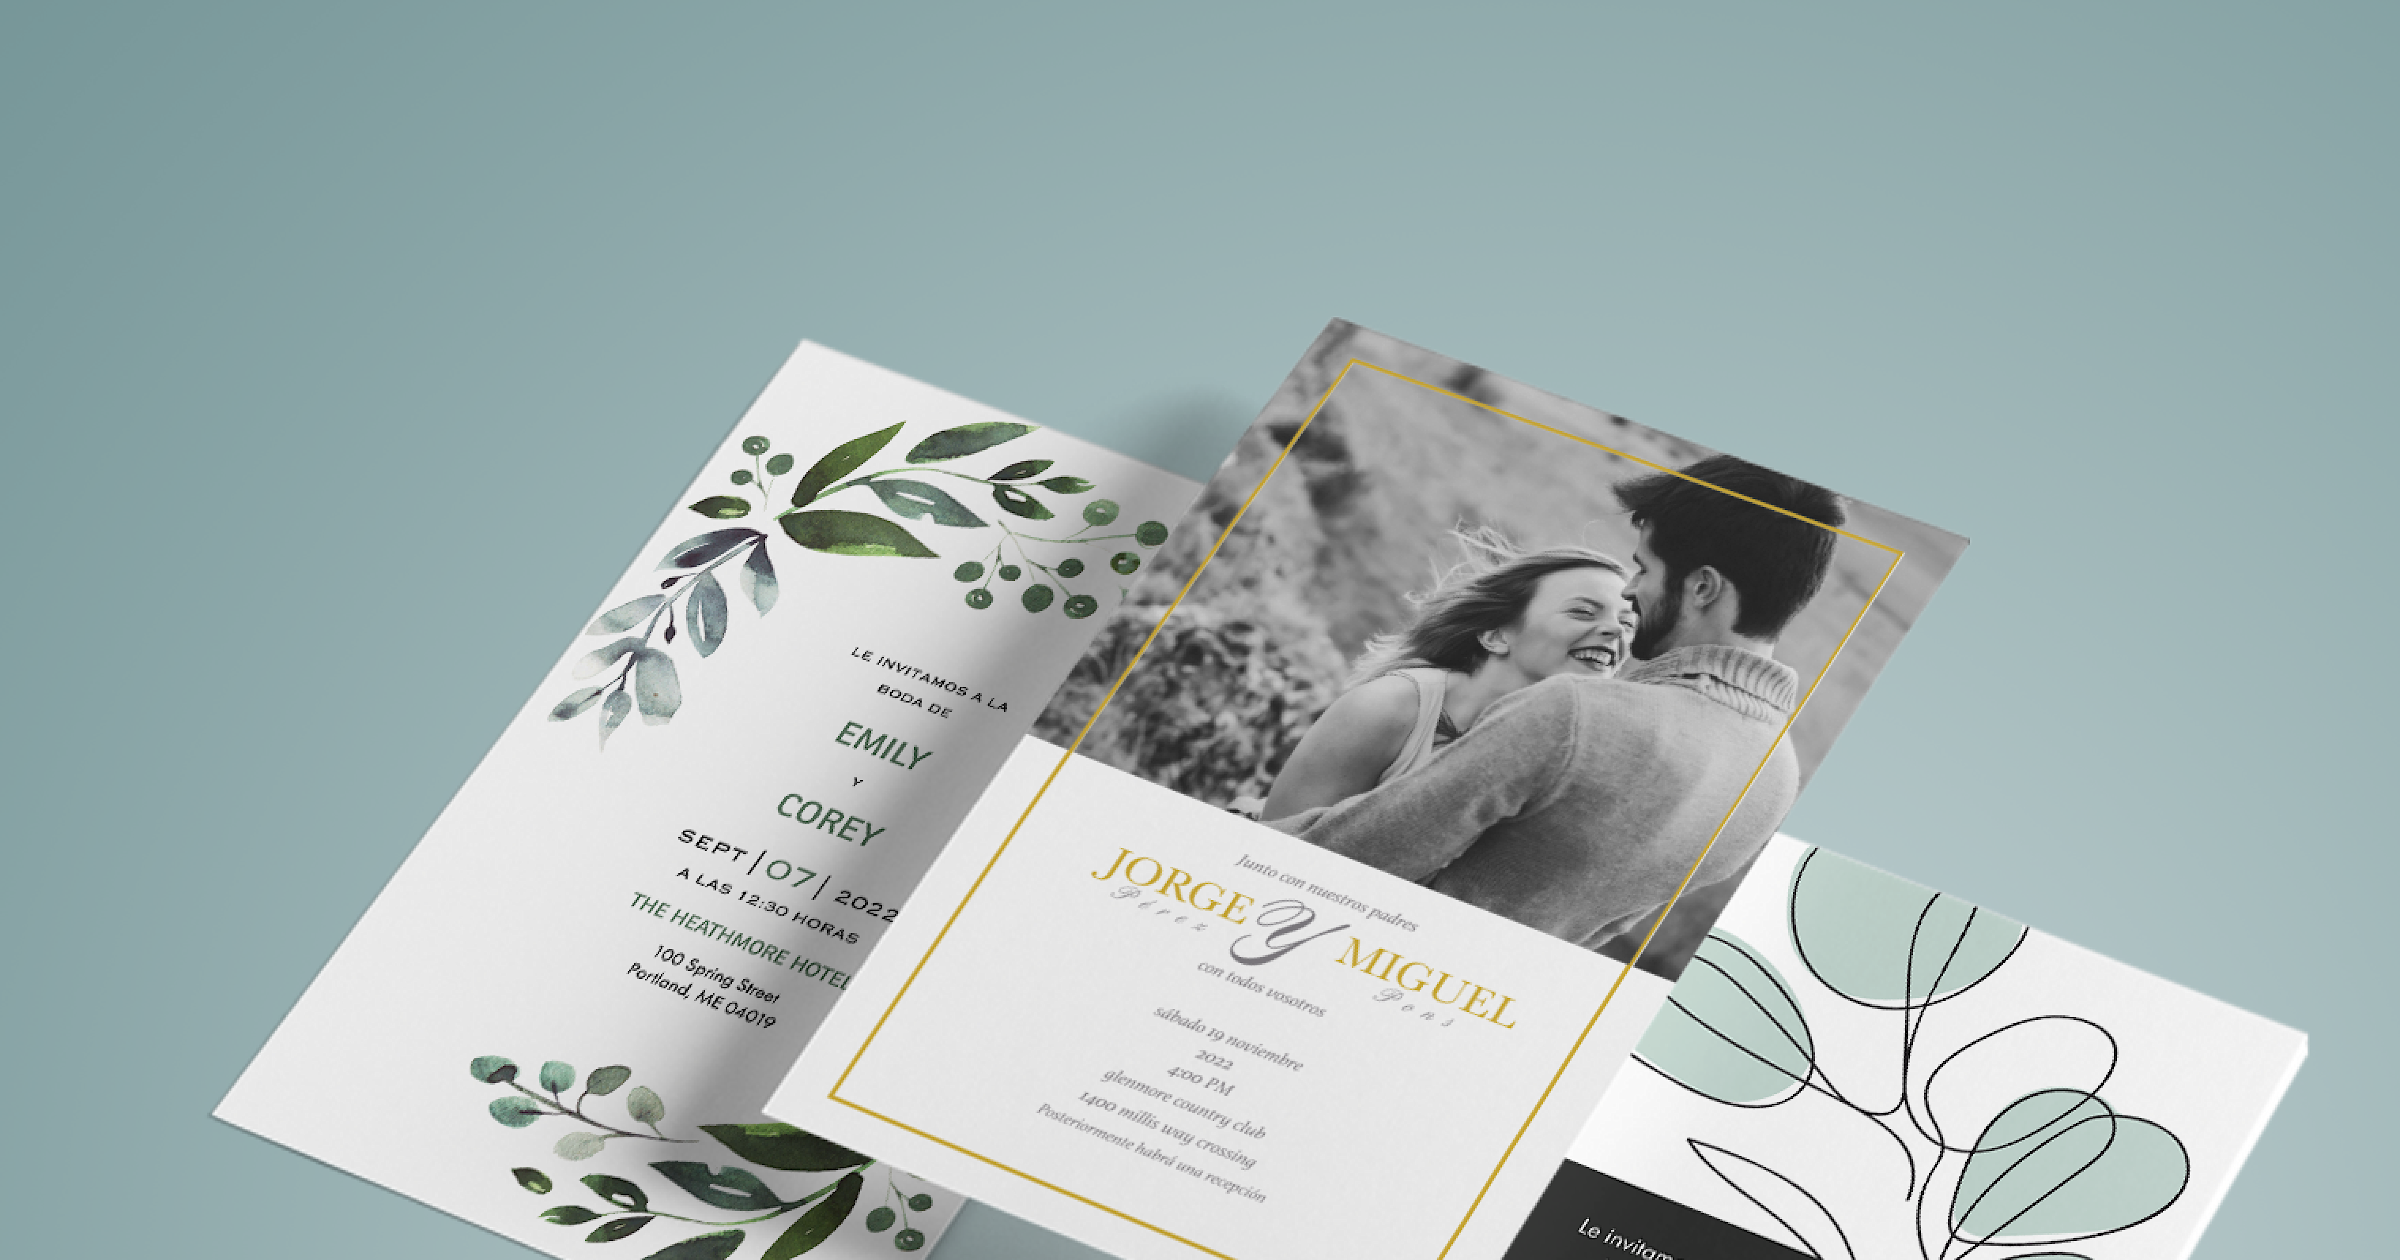 invitaciones ideal bodas Sello Boda Personalizado con tus nombres tarjetas 